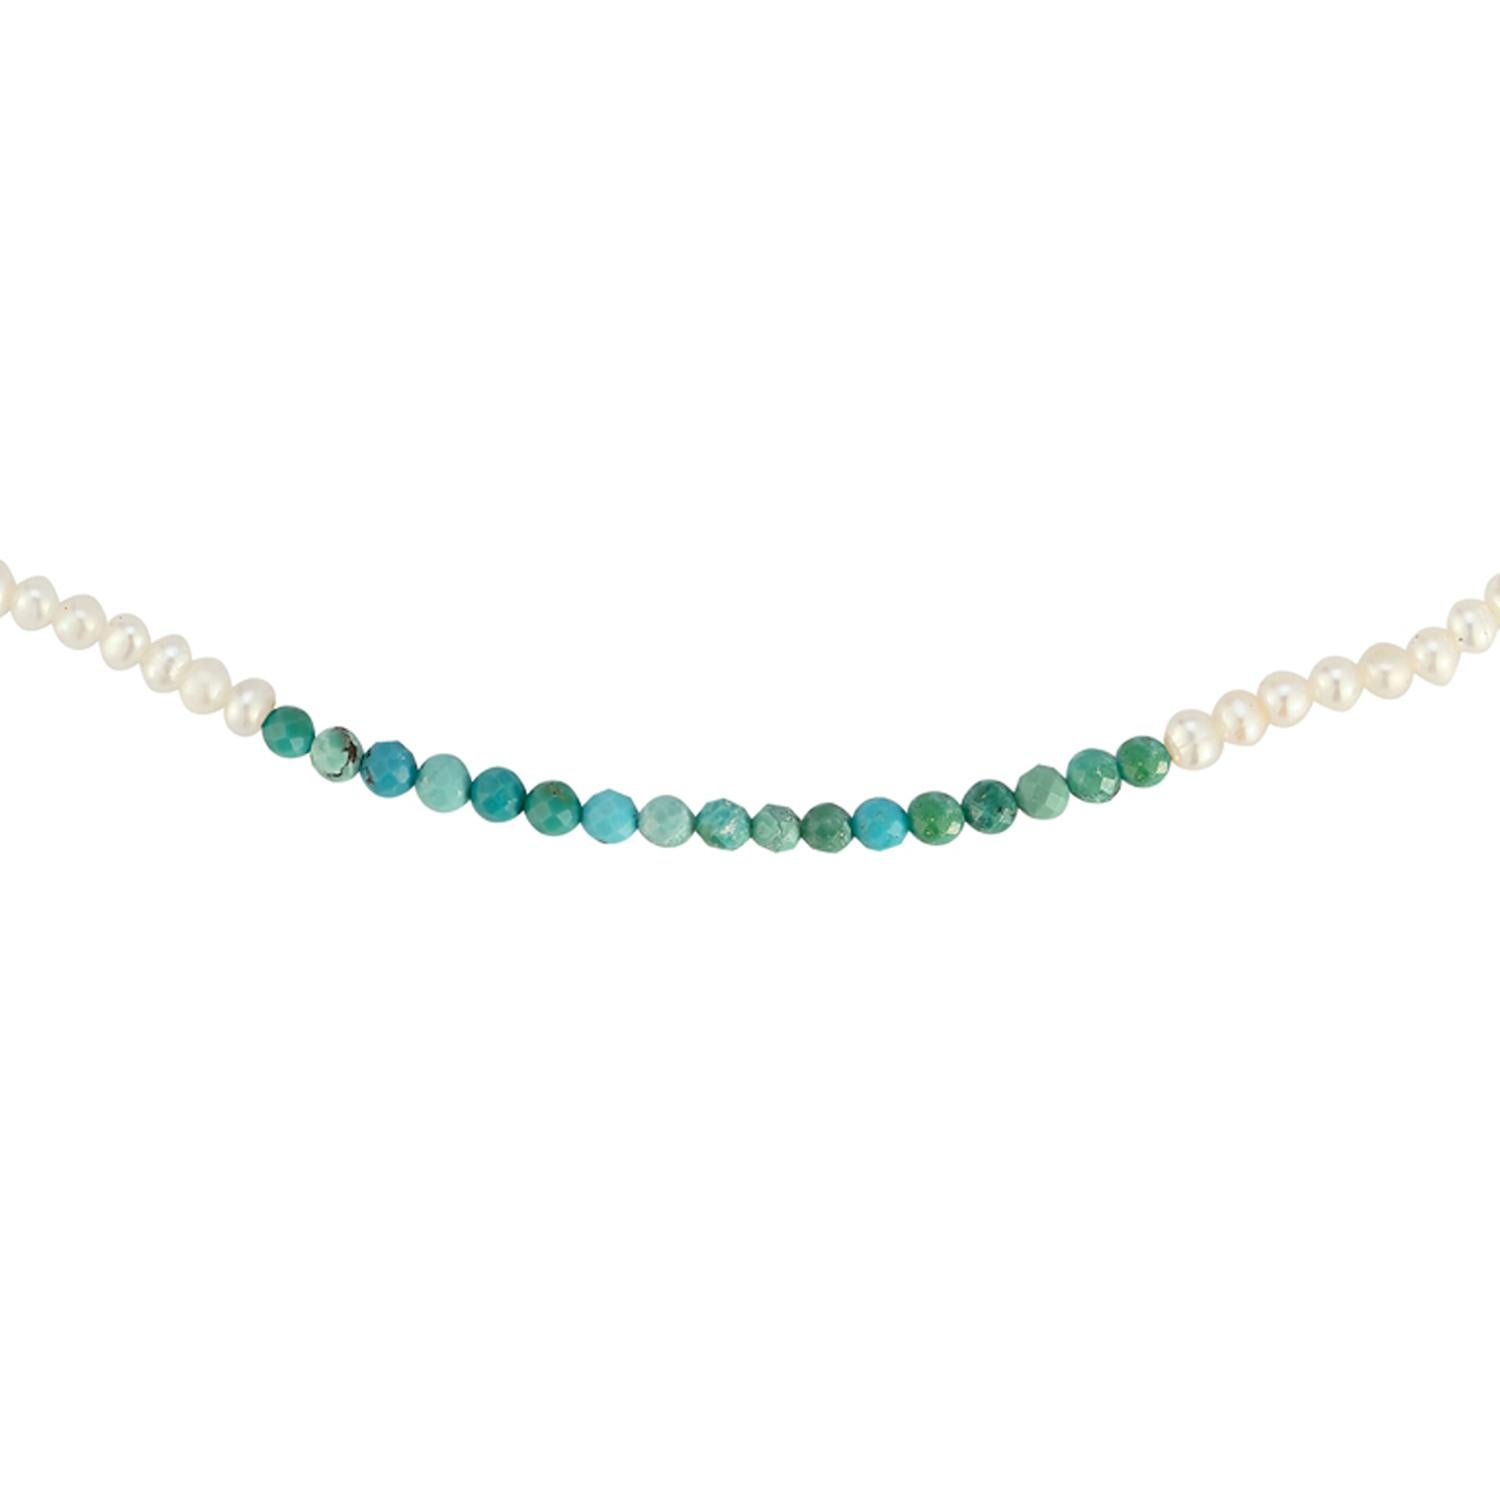 Dies ist kein gewöhnliches Perlenhalsband mit einem Farbklecks in Form eines Farbblocks mit facettierten Halbedelsteinen aus Türkis. Ein lustiges Lagenstück für alle Jahreszeiten, wenn Sie Ihre Halsketten gerne mit Perlen und Ketten